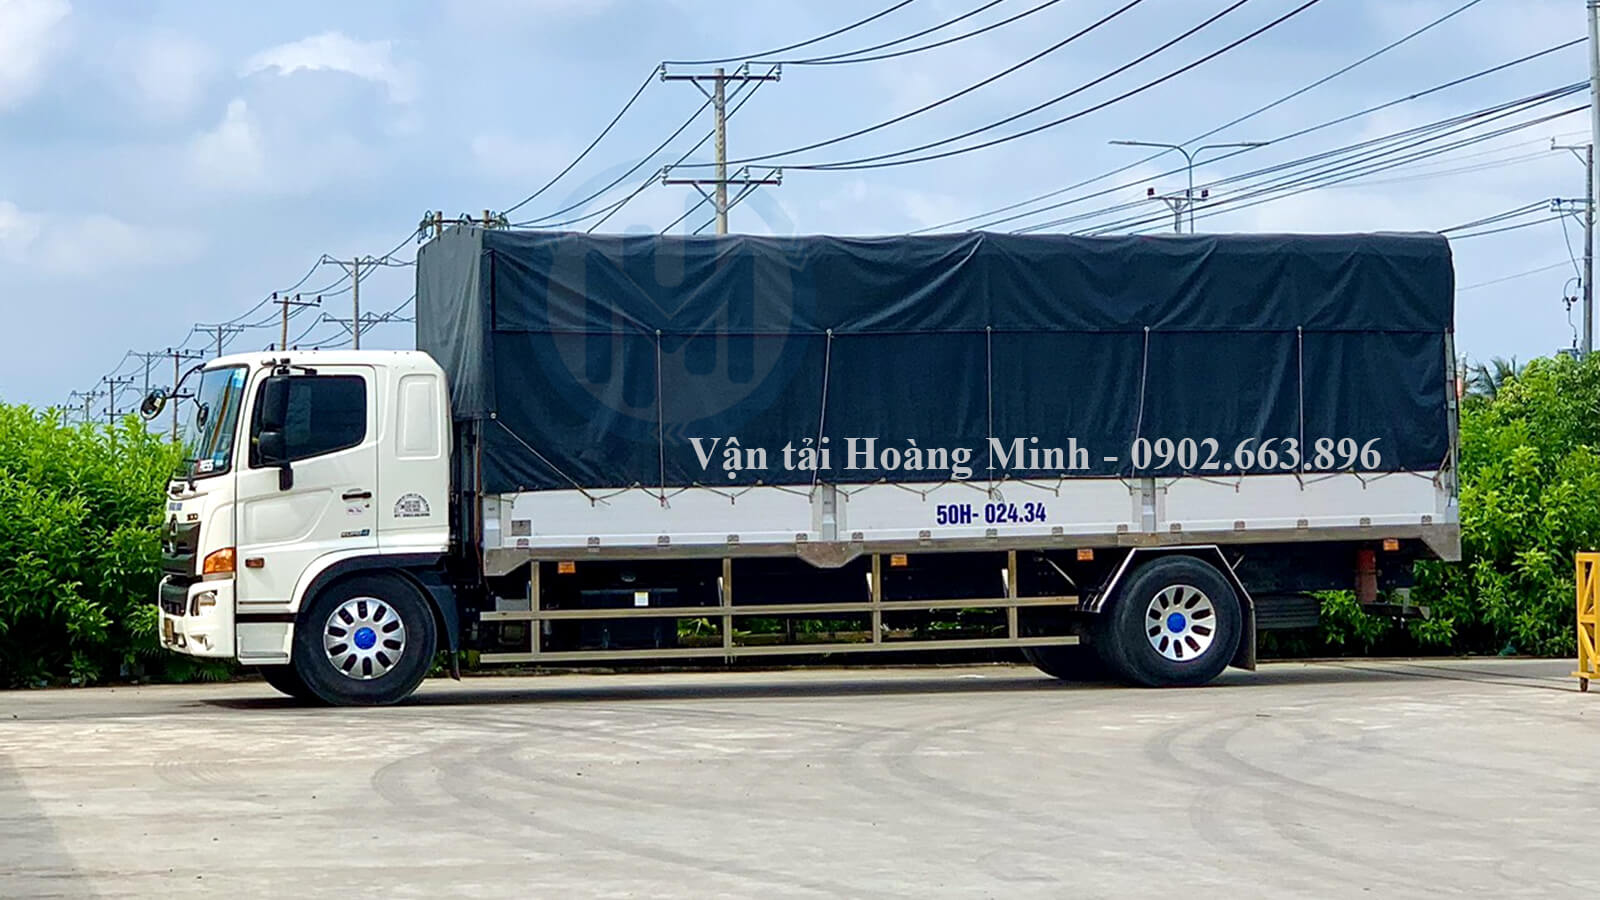 Bảng giá cho thuê xe tải chở hàng 10 tấn mới nhất